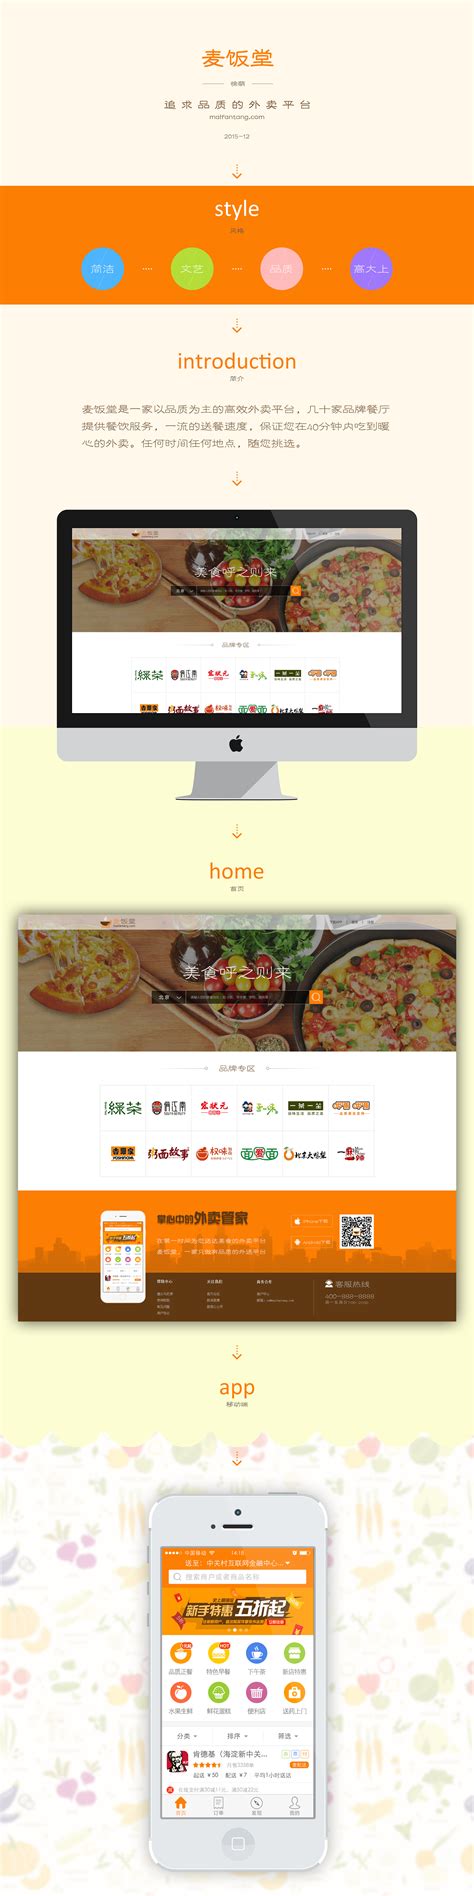 创意html5外卖快餐食品展示网页模板